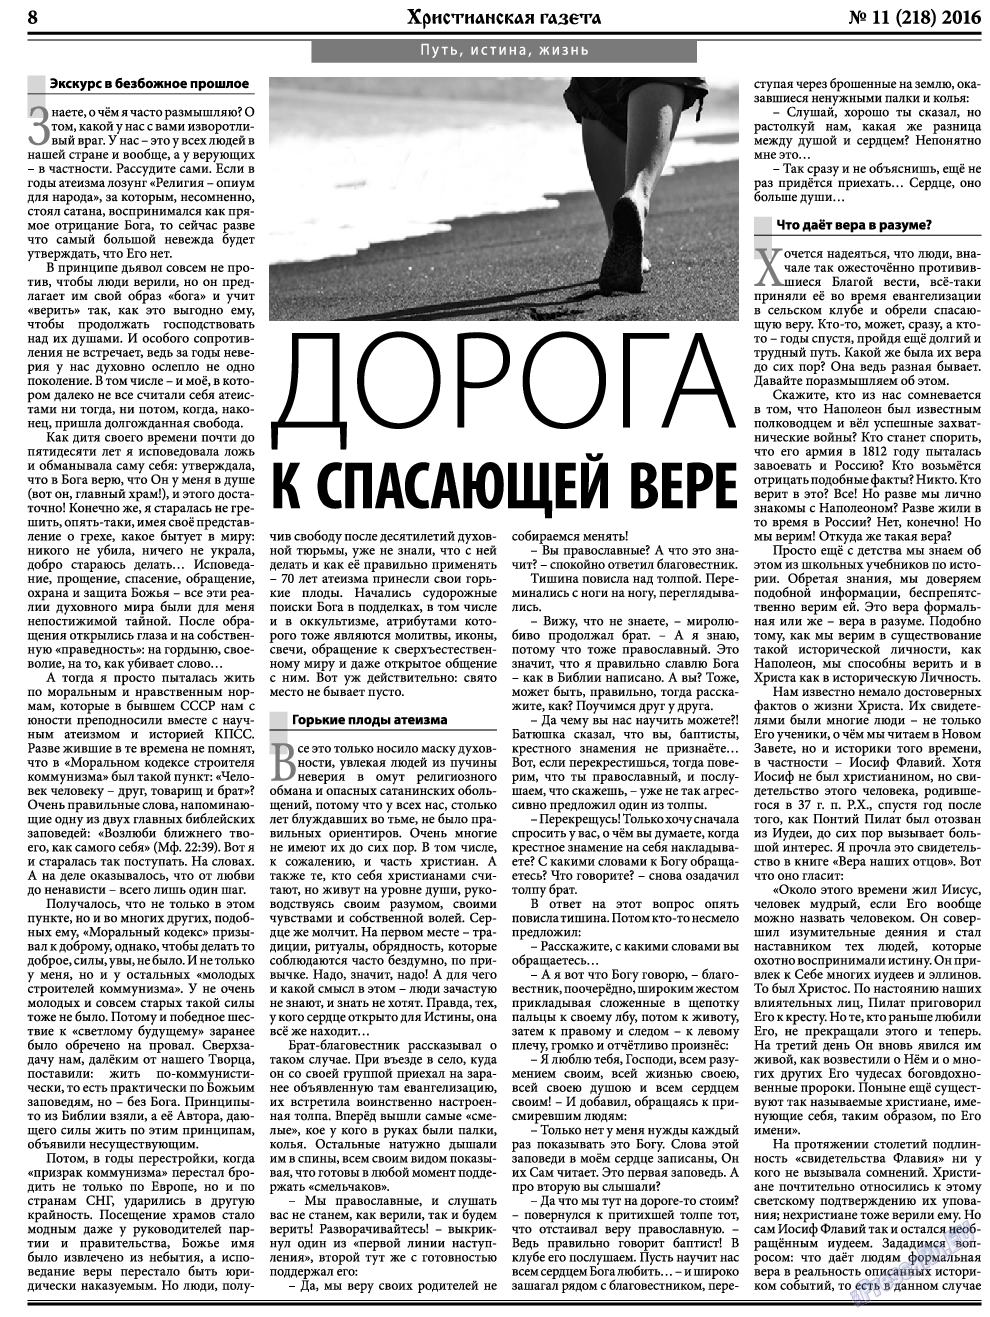 Христианская газета, газета. 2016 №11 стр.8